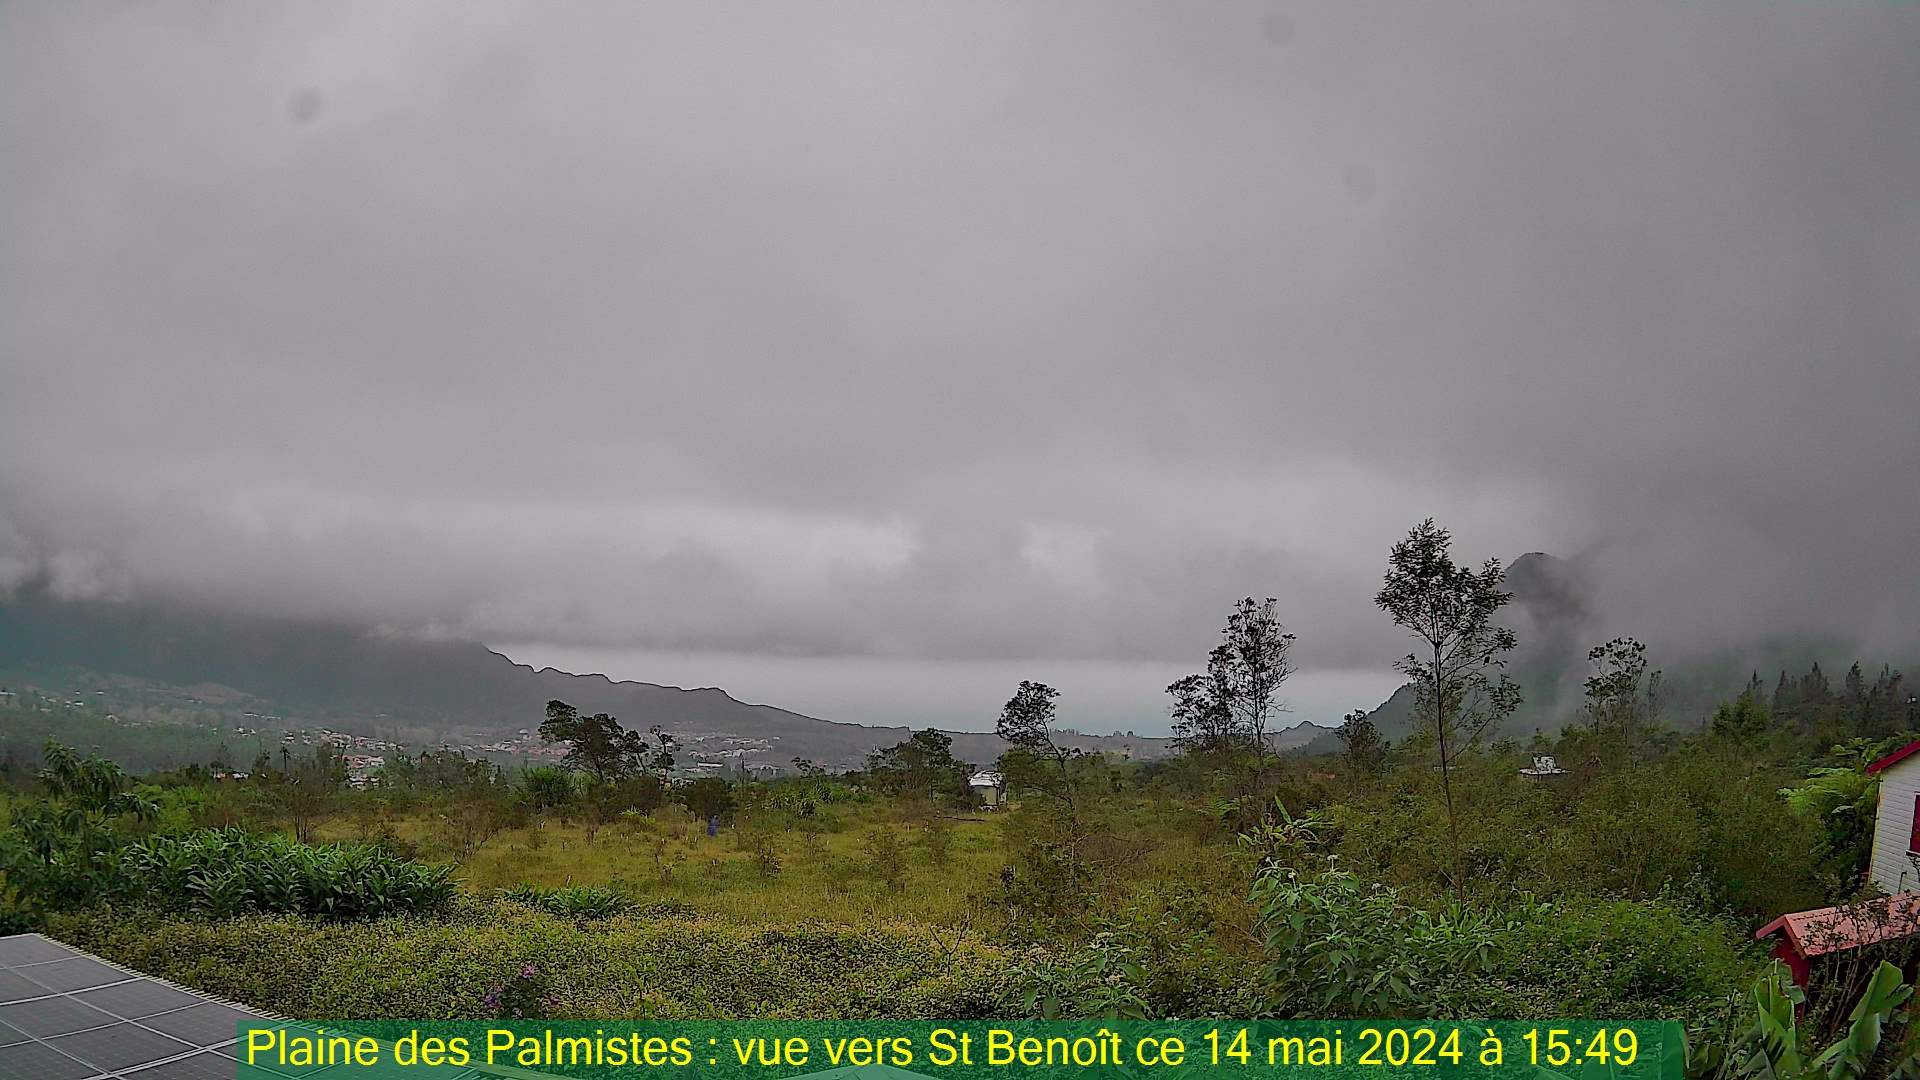 Saint-Denis (Réunion) Do. 15:50